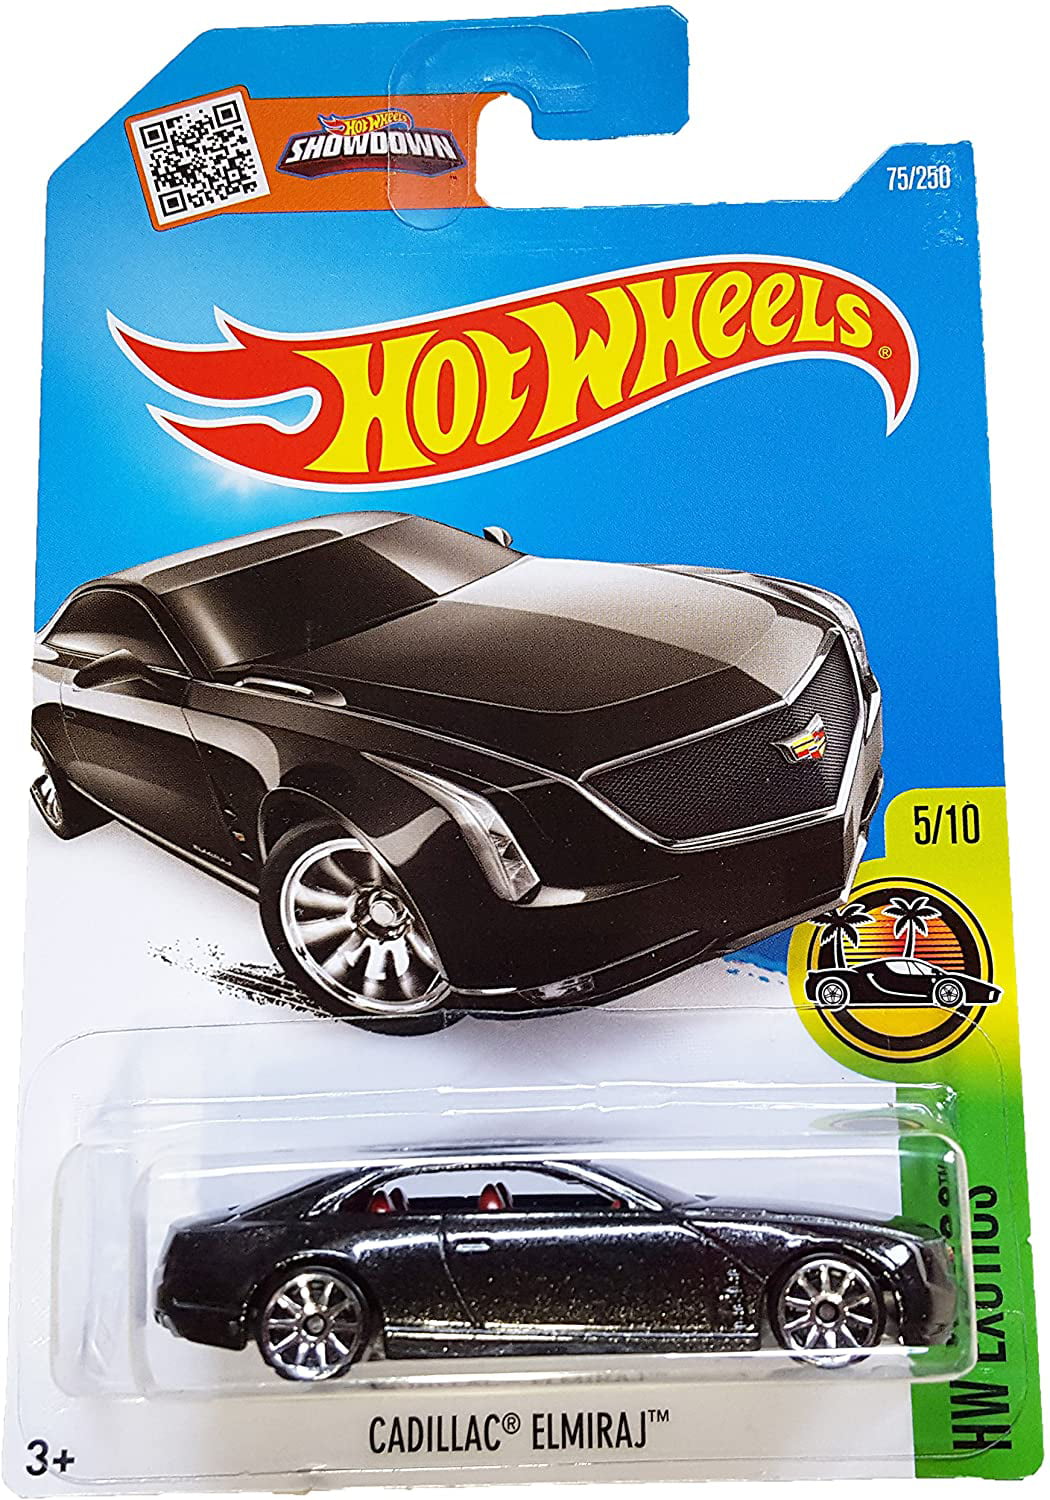 Hot Wheels 2016 HW Exotics Cadillac Elmiraj 75/250, Black